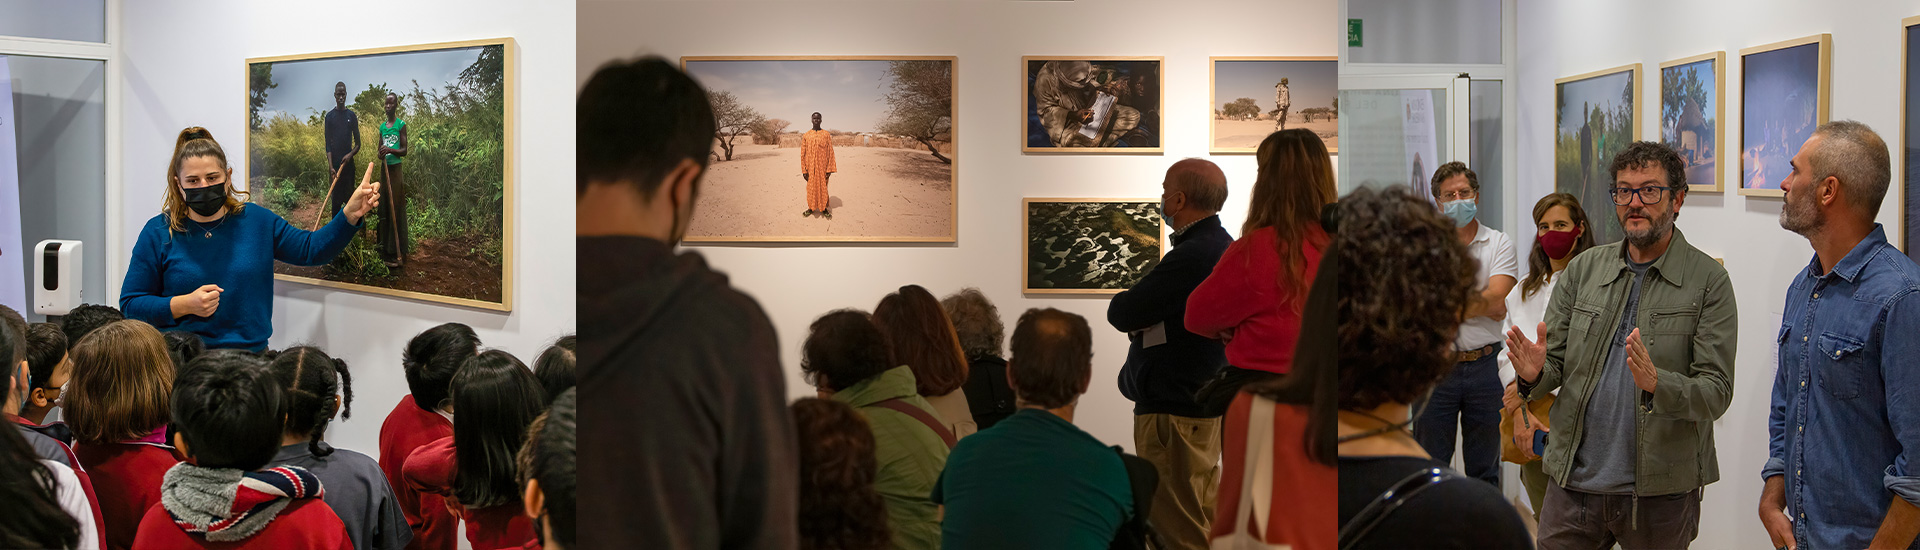 Prorrogada la exposición ‘Indestructibles’ en el Museo Misiones Salesianas hasta el 12 de febrero